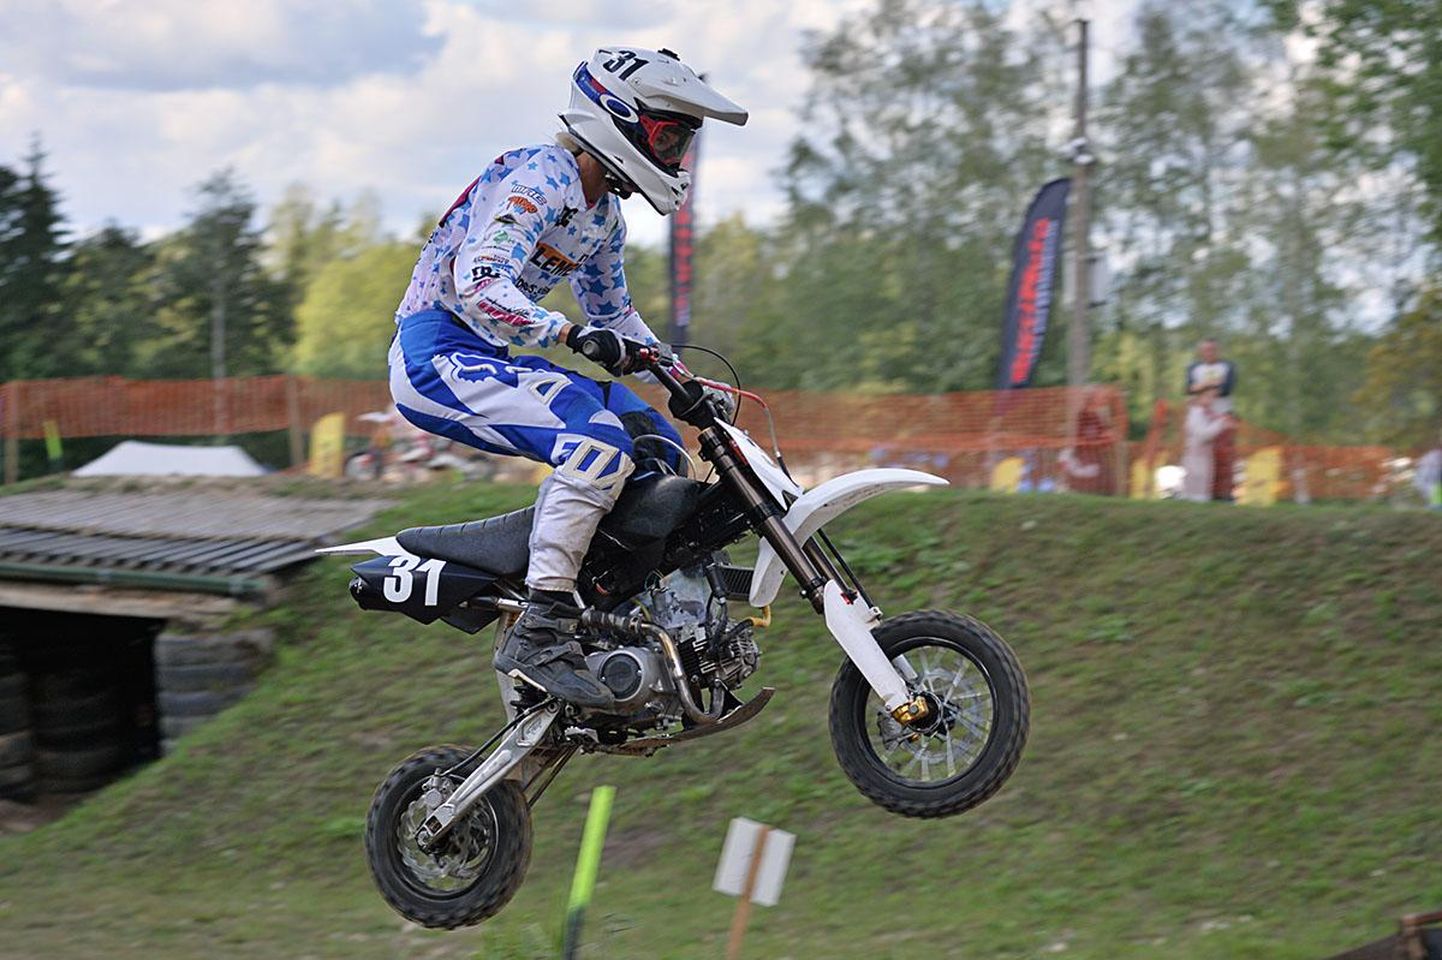 Viljandi motoklubi sõitja Kristel Raba võitis Linnamäel peetud pitbike’i karikasarja finaaletapil MiniDirt Semi 88 klassis esikoha, tagades ühtlasi sarja võidu.